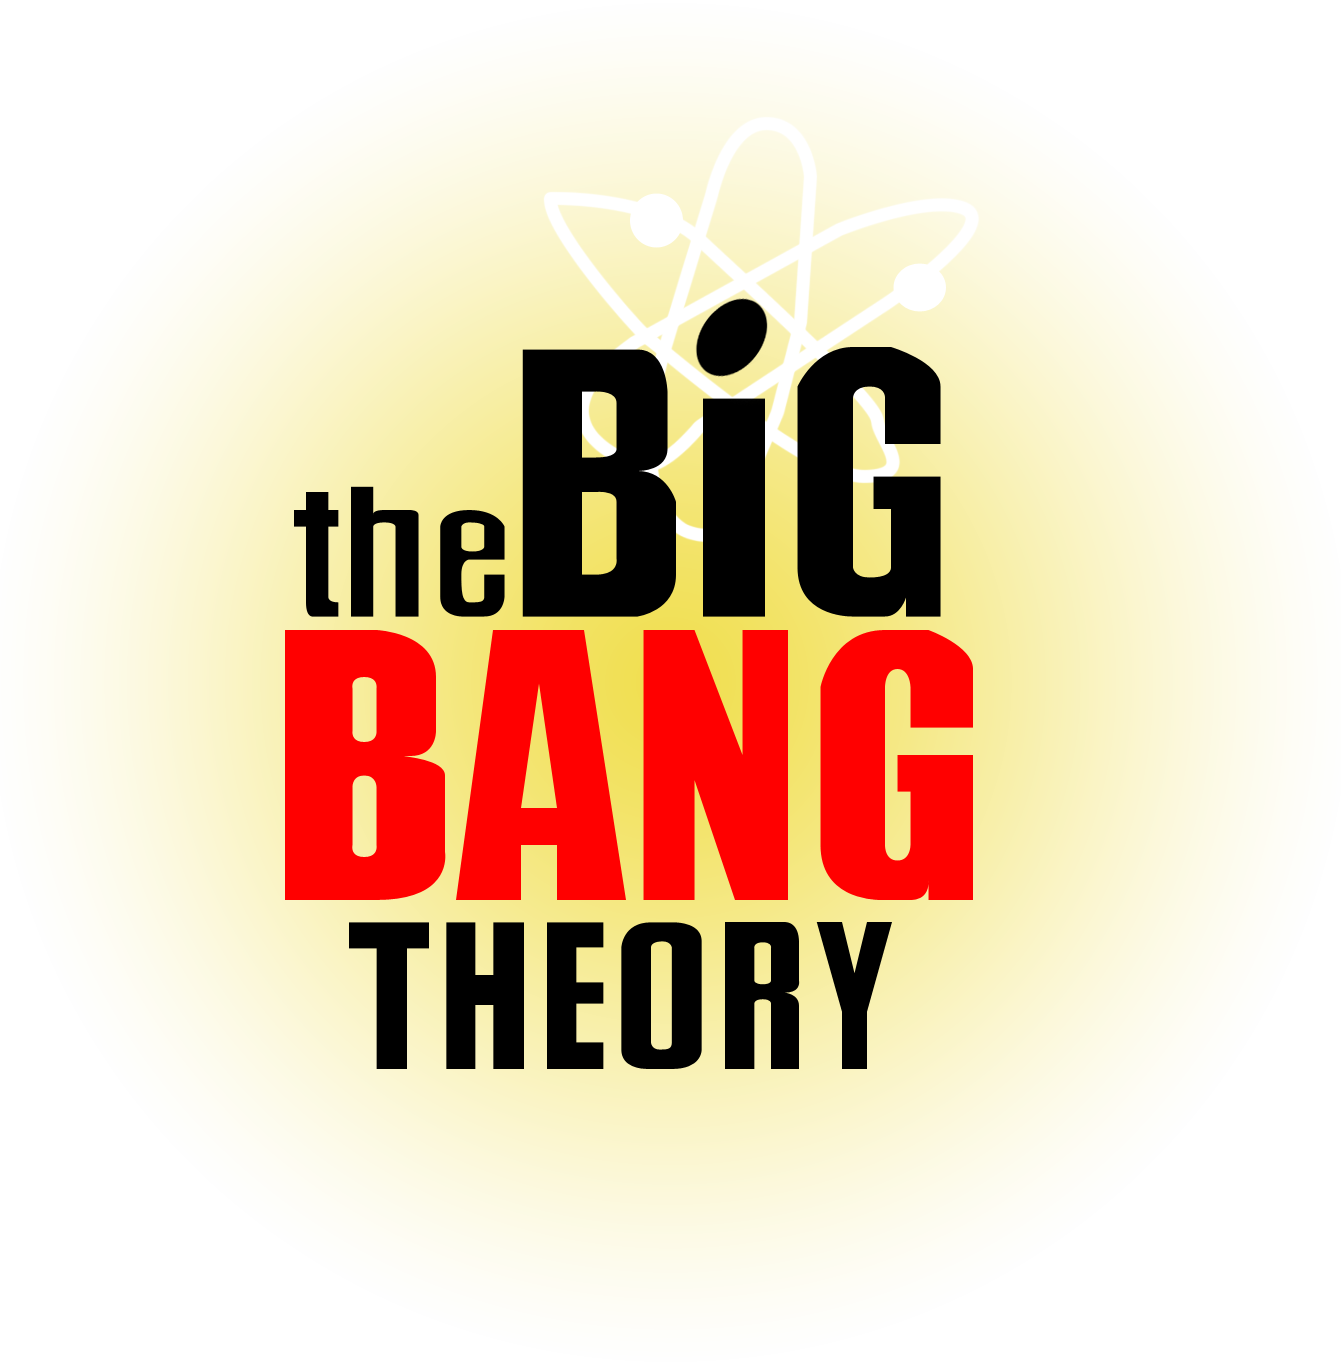 The Big Bang Theory Logo PNG Image